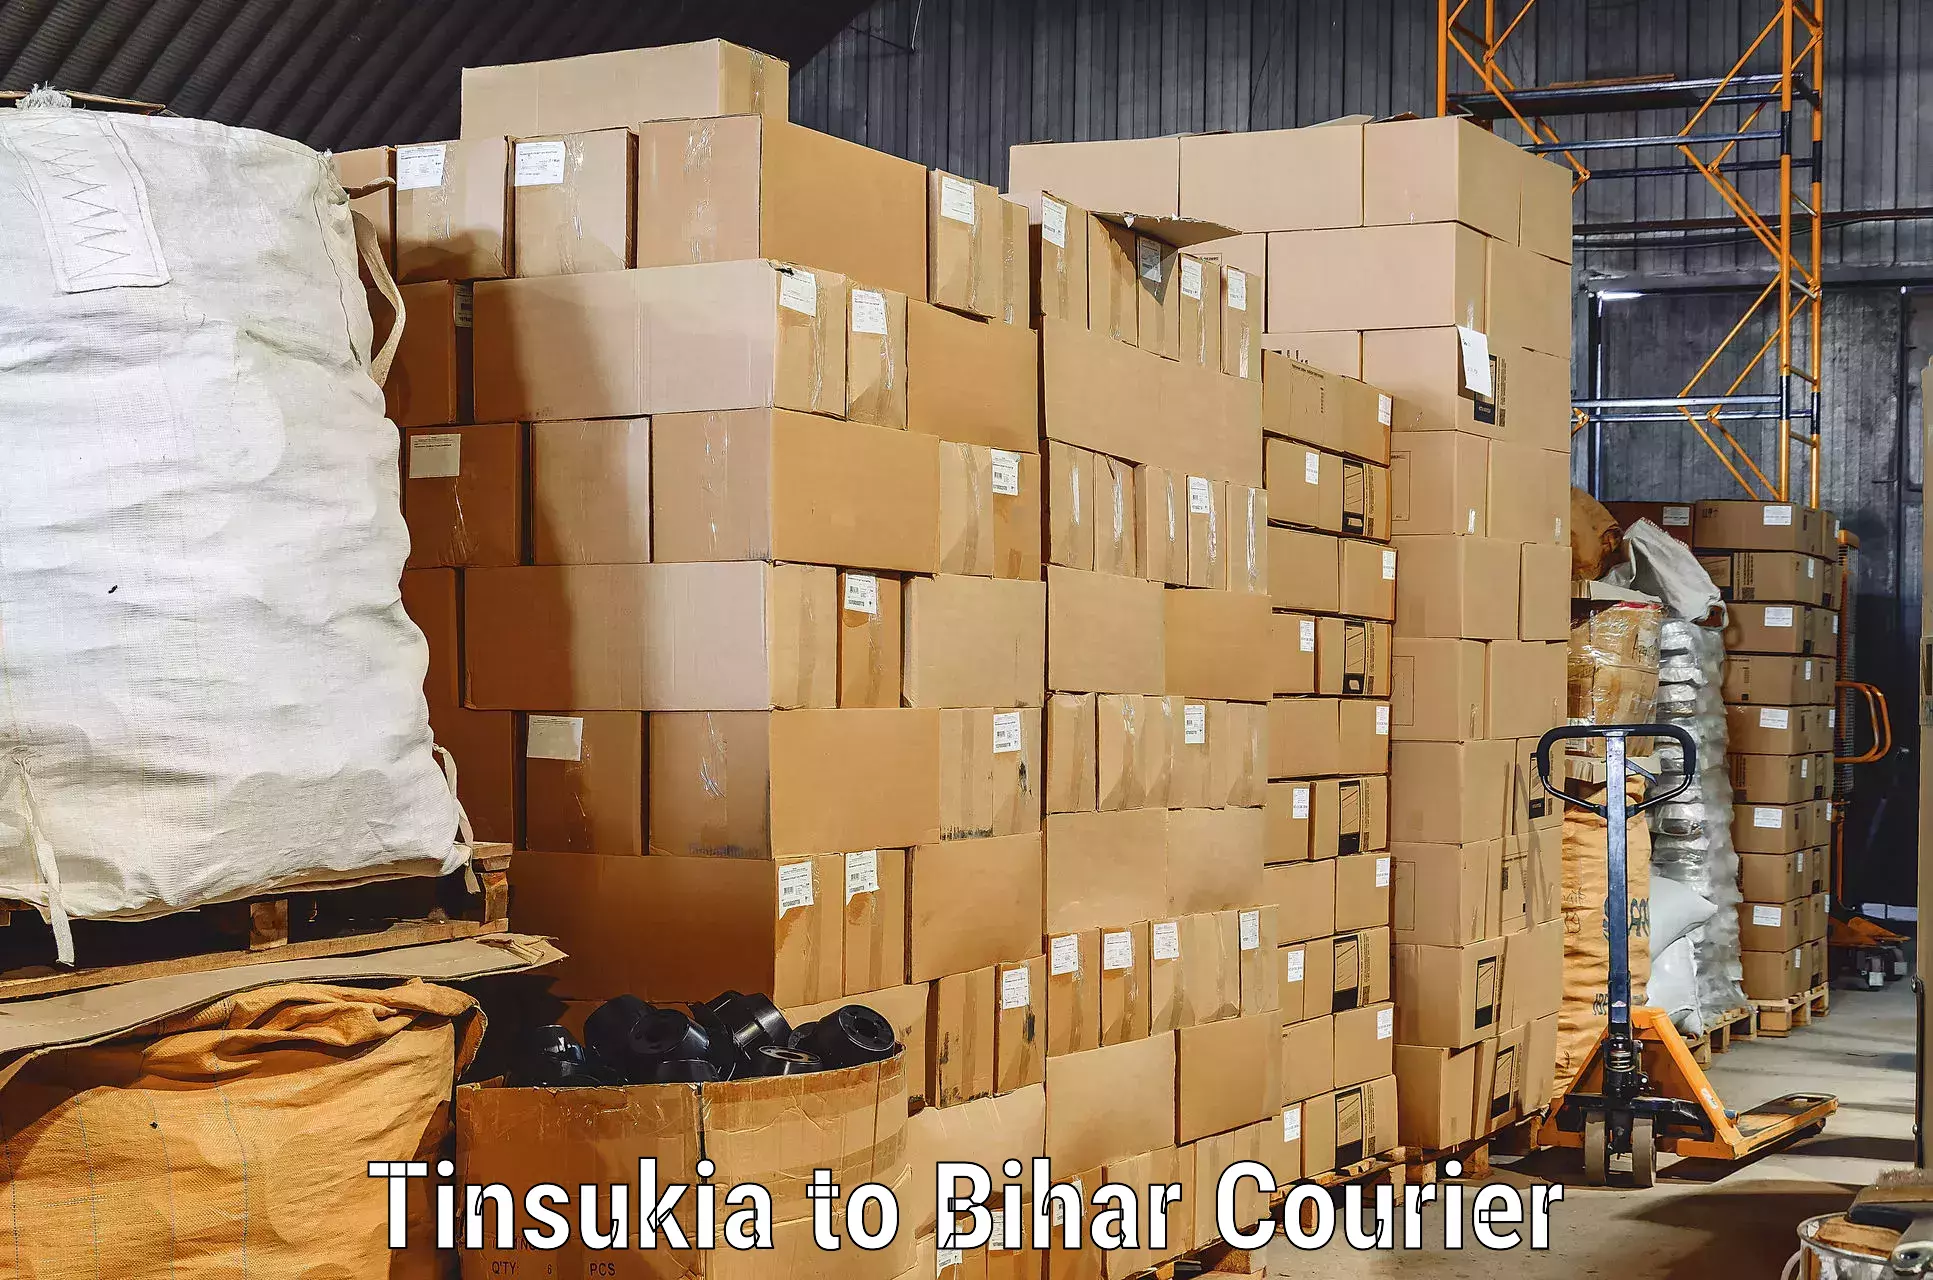 Reliable movers Tinsukia to Bagaha